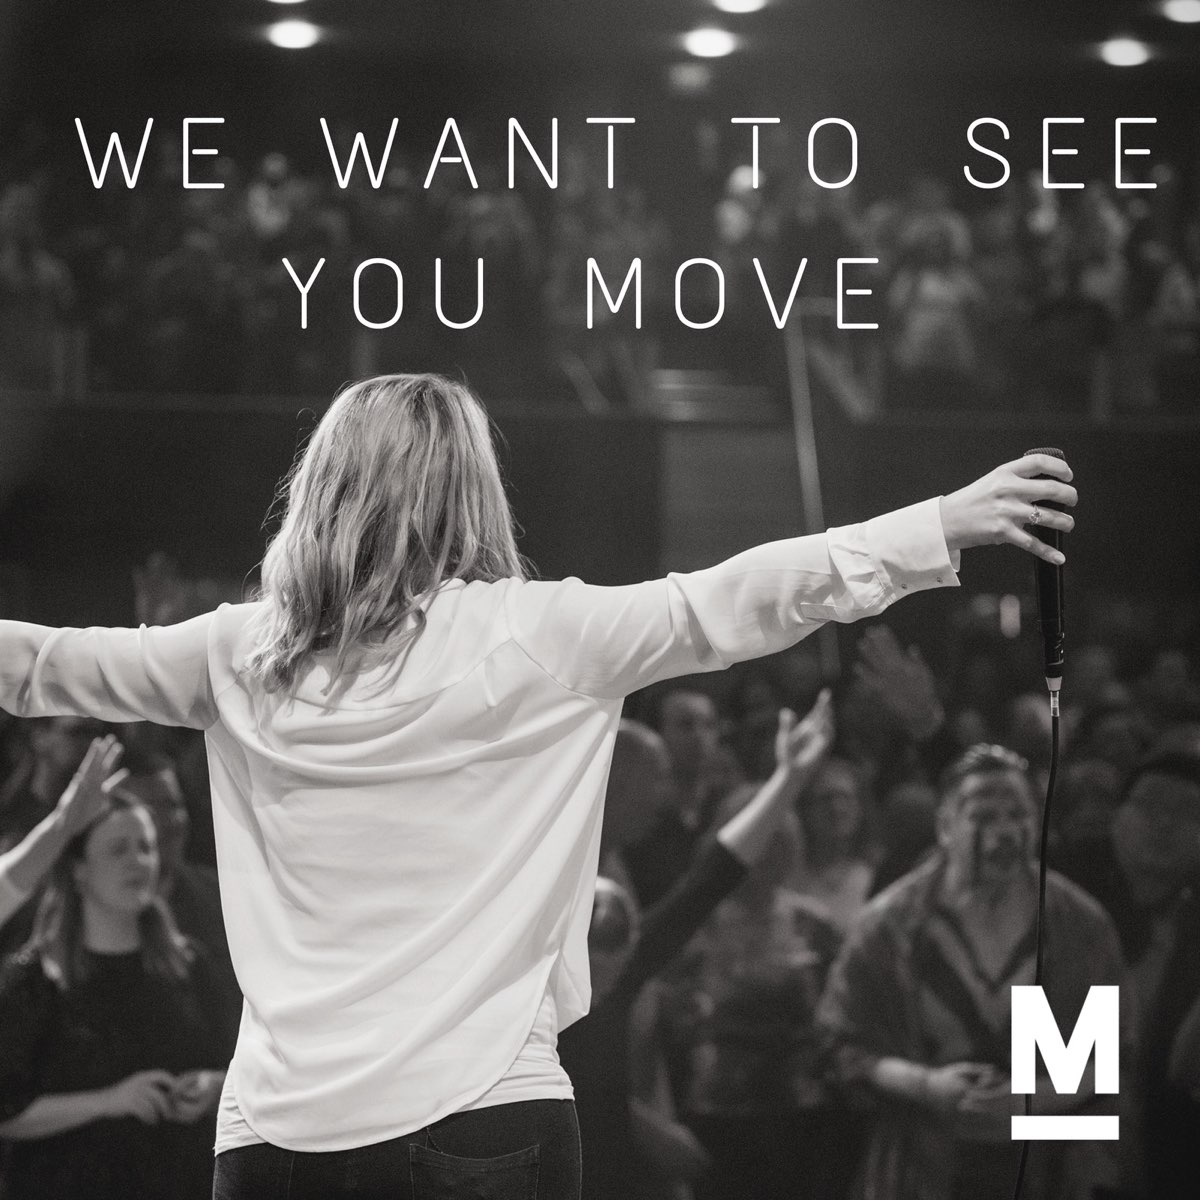 Move you. Move Live.